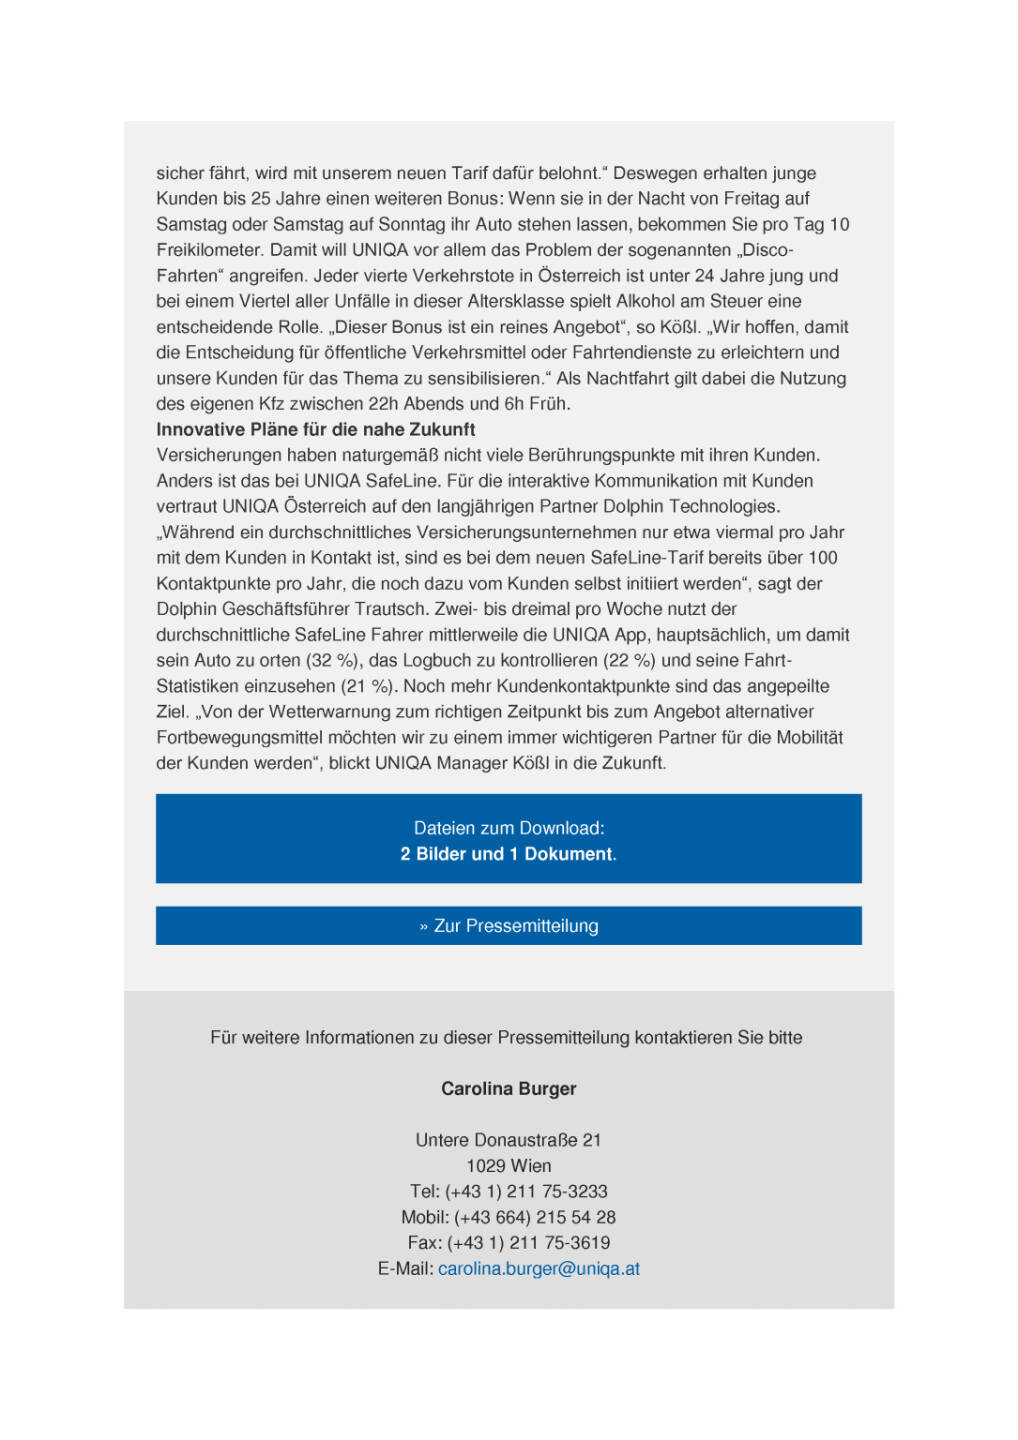 Uniqa Österreich erweitert Kfz-Tarif SafeLine, Seite 2/3, komplettes Dokument unter http://boerse-social.com/static/uploads/file_1156_uniqa_osterreich_erweitert_kfz-tarif_safeline.pdf